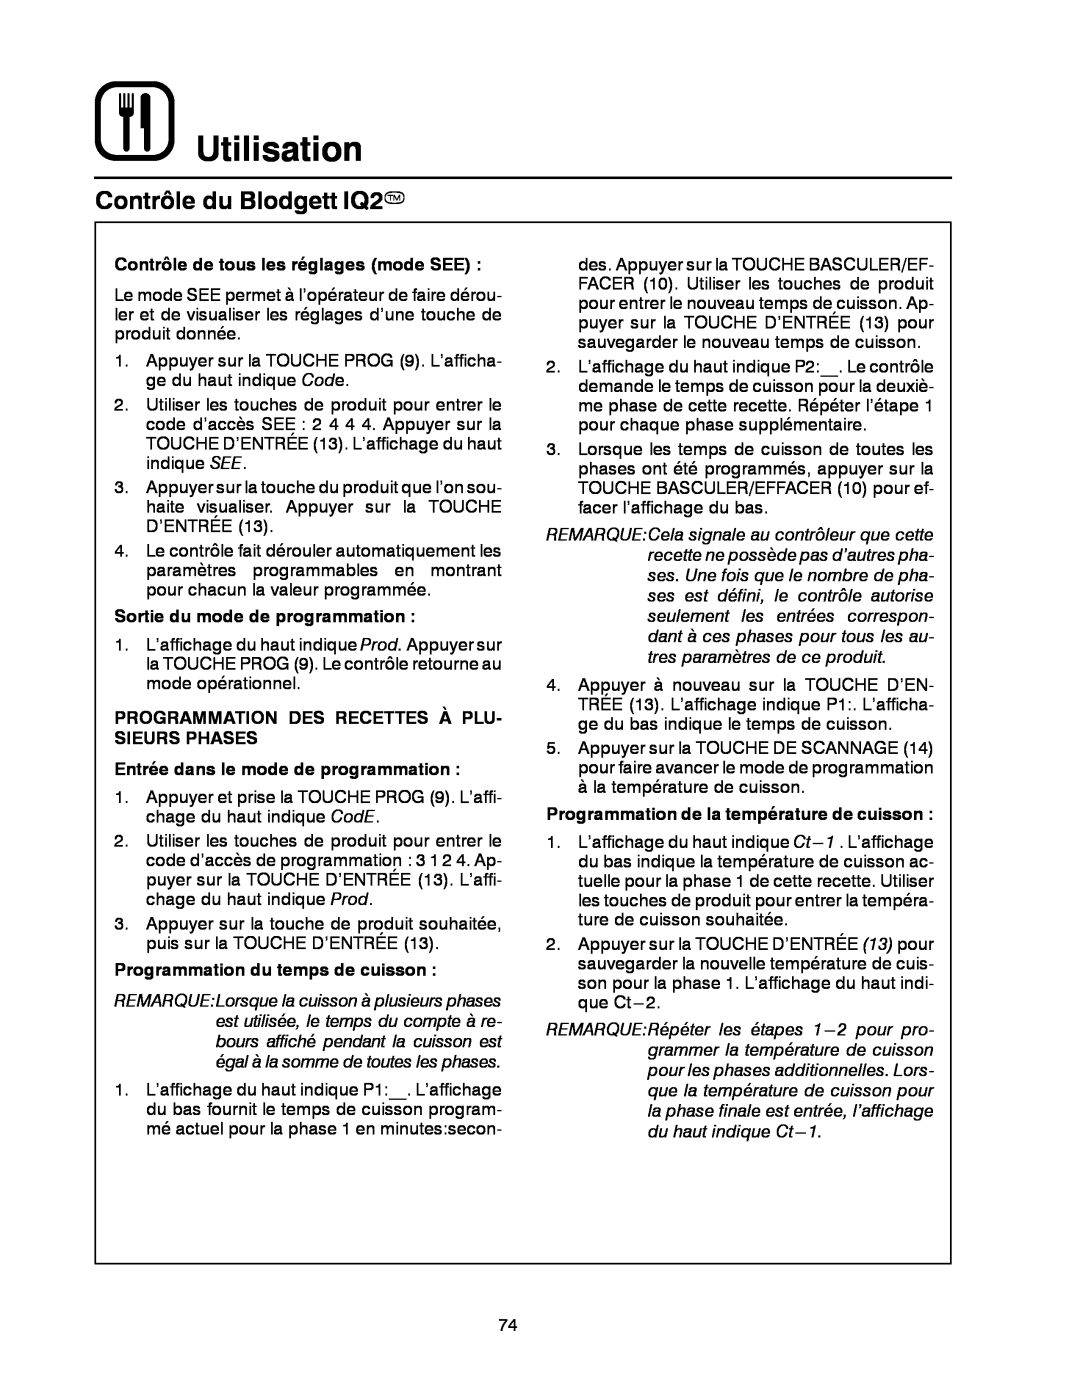 Blodgett DFG-50 manual Utilisation, Contrôle du Blodgett IQ2T, Contrôle de tous les réglages mode SEE 